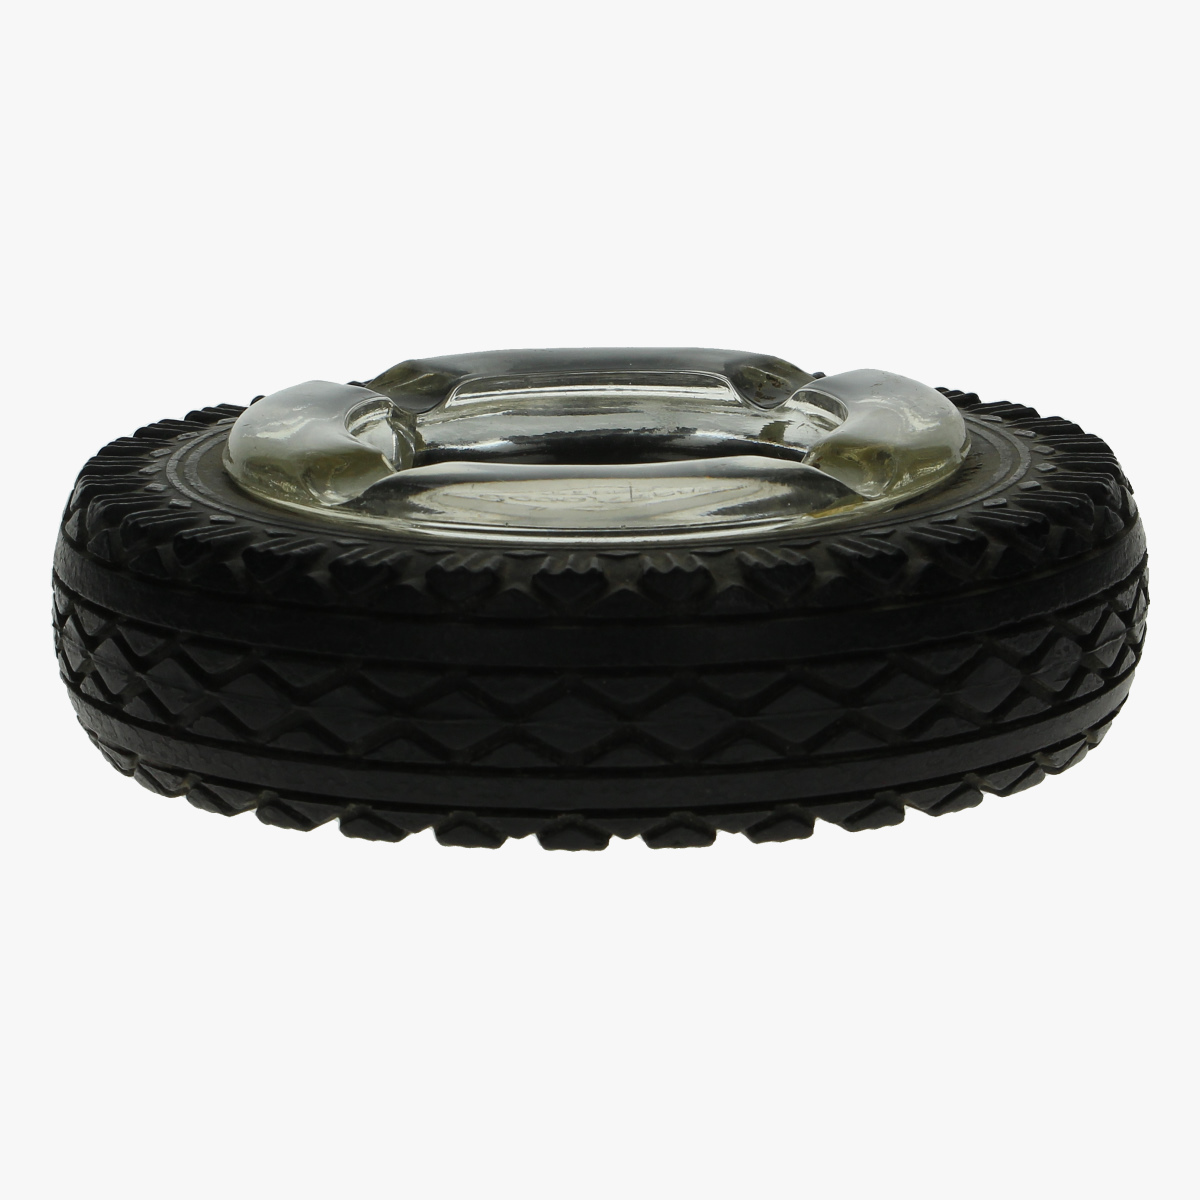 Afbeeldingen van asbak goodyear tyres